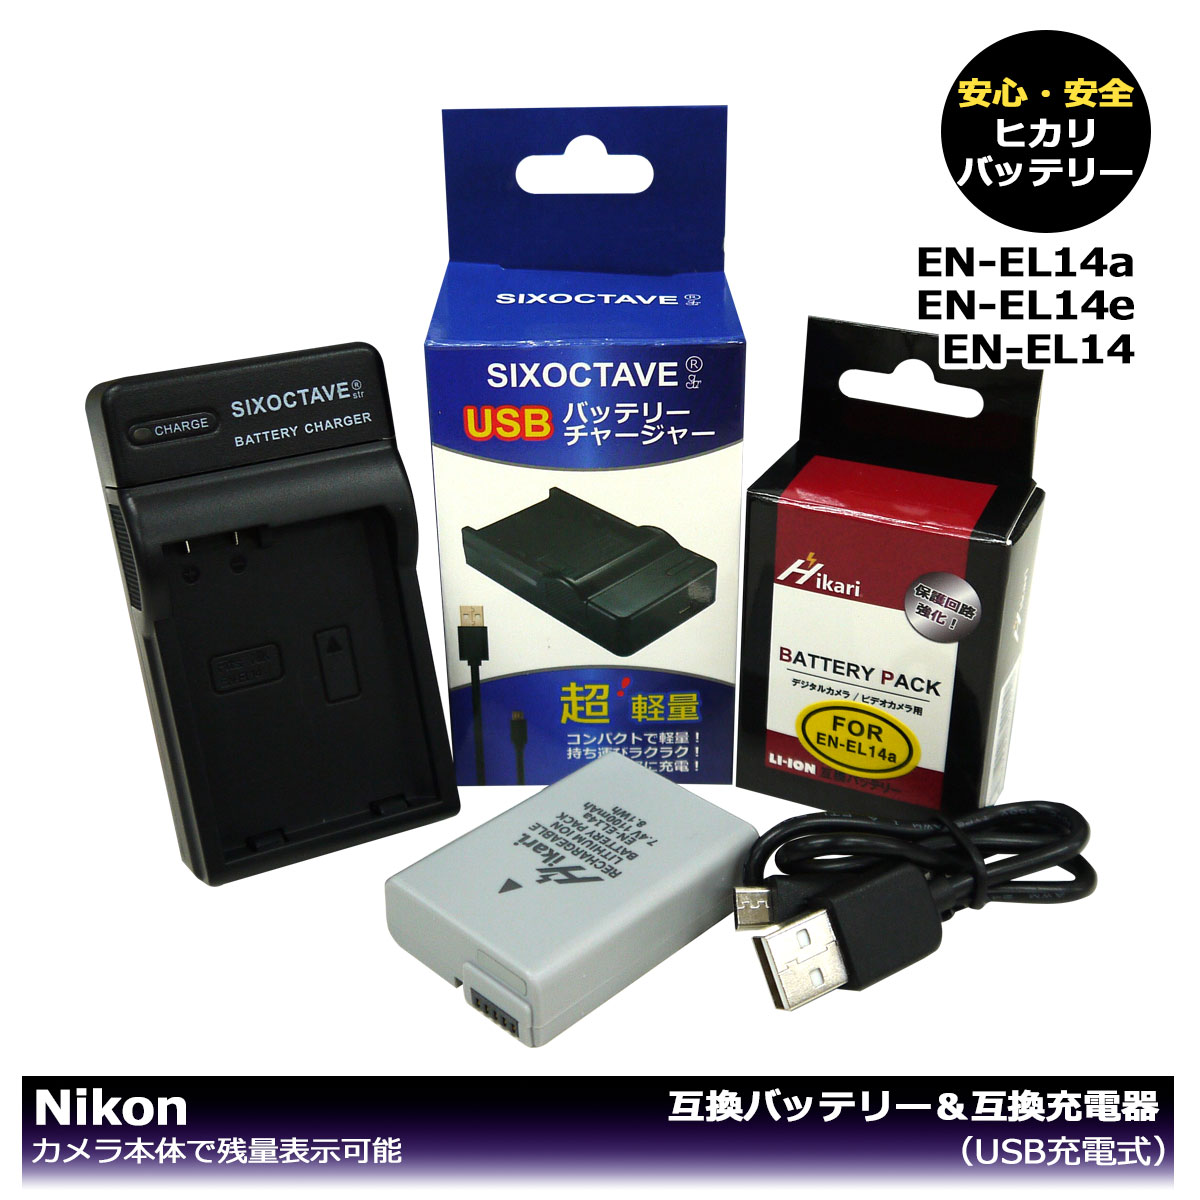 （大容量シリーズ）EN-EL14 / EN-EL14a / EN-EL14e 商品内容 互換バッテリー　1個 互換充電器（USB充電式）　1個 規格 【バッテリー】 形式：リチウムイオン 電圧：7.4V 容量：1100mAh 寸法　約37.7×51.9×14.0mm 質量：約48g 【充電器】 入力：micro USB DC5V±5% 出力：DC 4.2V±5% 500mA 対応機種 COOLPIX P7000 COOLPIX P7100 COOLPIX P7700 COOLPIX P7800 COOLPIX P8000 D3100 D3200 D3300 D3400 D3500 D5100 D5200 D5300 D5500 D5600 Df 互換バッテリー：EN-EL14 / EN-EL14a / EN-EL14e 対応充電器：EN-EL14 / MH-24 / MH-24a 仕様 【バッテリー】 ●大容量シリーズの互換バッテリー！ ●最新ICチップ搭載 ●カメラ本体に残量表示可能。 ●純正充電器でも充電可能 ●PSEマーク（電気用品安全法）獲得製品。 ●CEマーク（欧州連合安全規制）獲得製品。 ●端子保護用のキャップ付き！ 【充電器】 ●USB端子がある機器に接続し、どこでも充電可能 ●超軽量で携帯に大変便利。 ●充電中は赤ランプ、充電完了後は緑ランプでお知らせ。 ●認証：CEマーク（欧州連合安全規制）取得製品。 ●純正＆互換バッテリーも充電可能。 ☆本製品には過電流保護、過充電防止、過放電防止の保護回路が内蔵。 保証：6ヶ月（PL保険（生産物賠償責任保険）加入済み。 ご購入日より6ヶ月の安心保証付き！ 届出事業者名：株式会社ヒカリ PSマークの種類：PSE